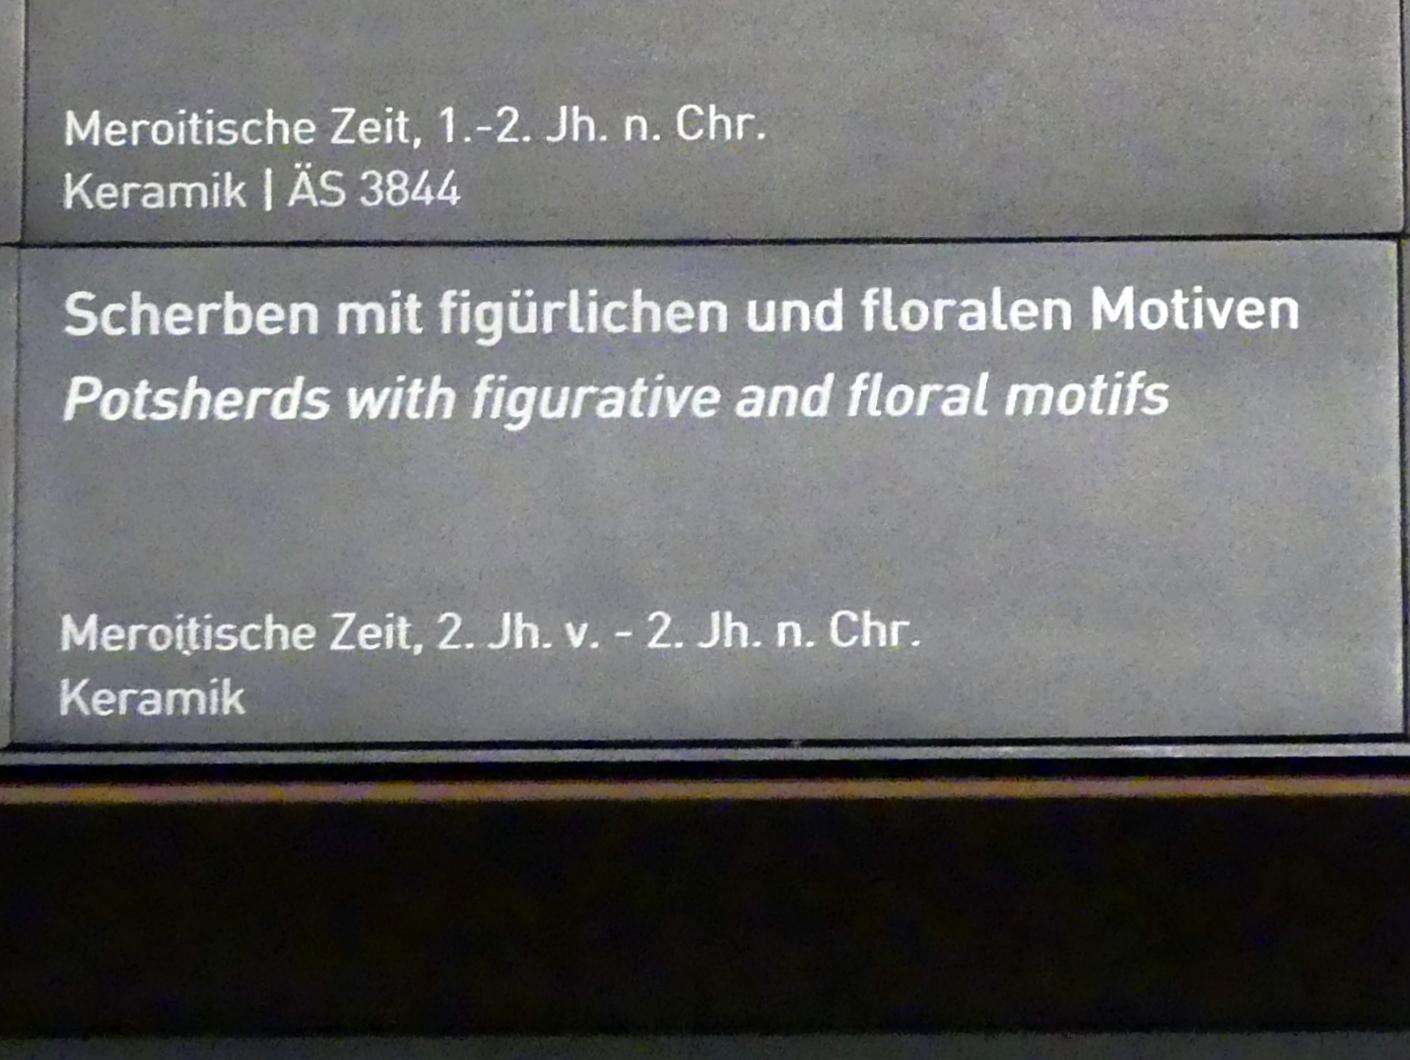 Scherben mit figürlichen und floralen Motiven, Meroitische Zeit, 200 v. Chr. - 500 n. Chr., 200 v. Chr. - 200 n. Chr., Bild 2/2